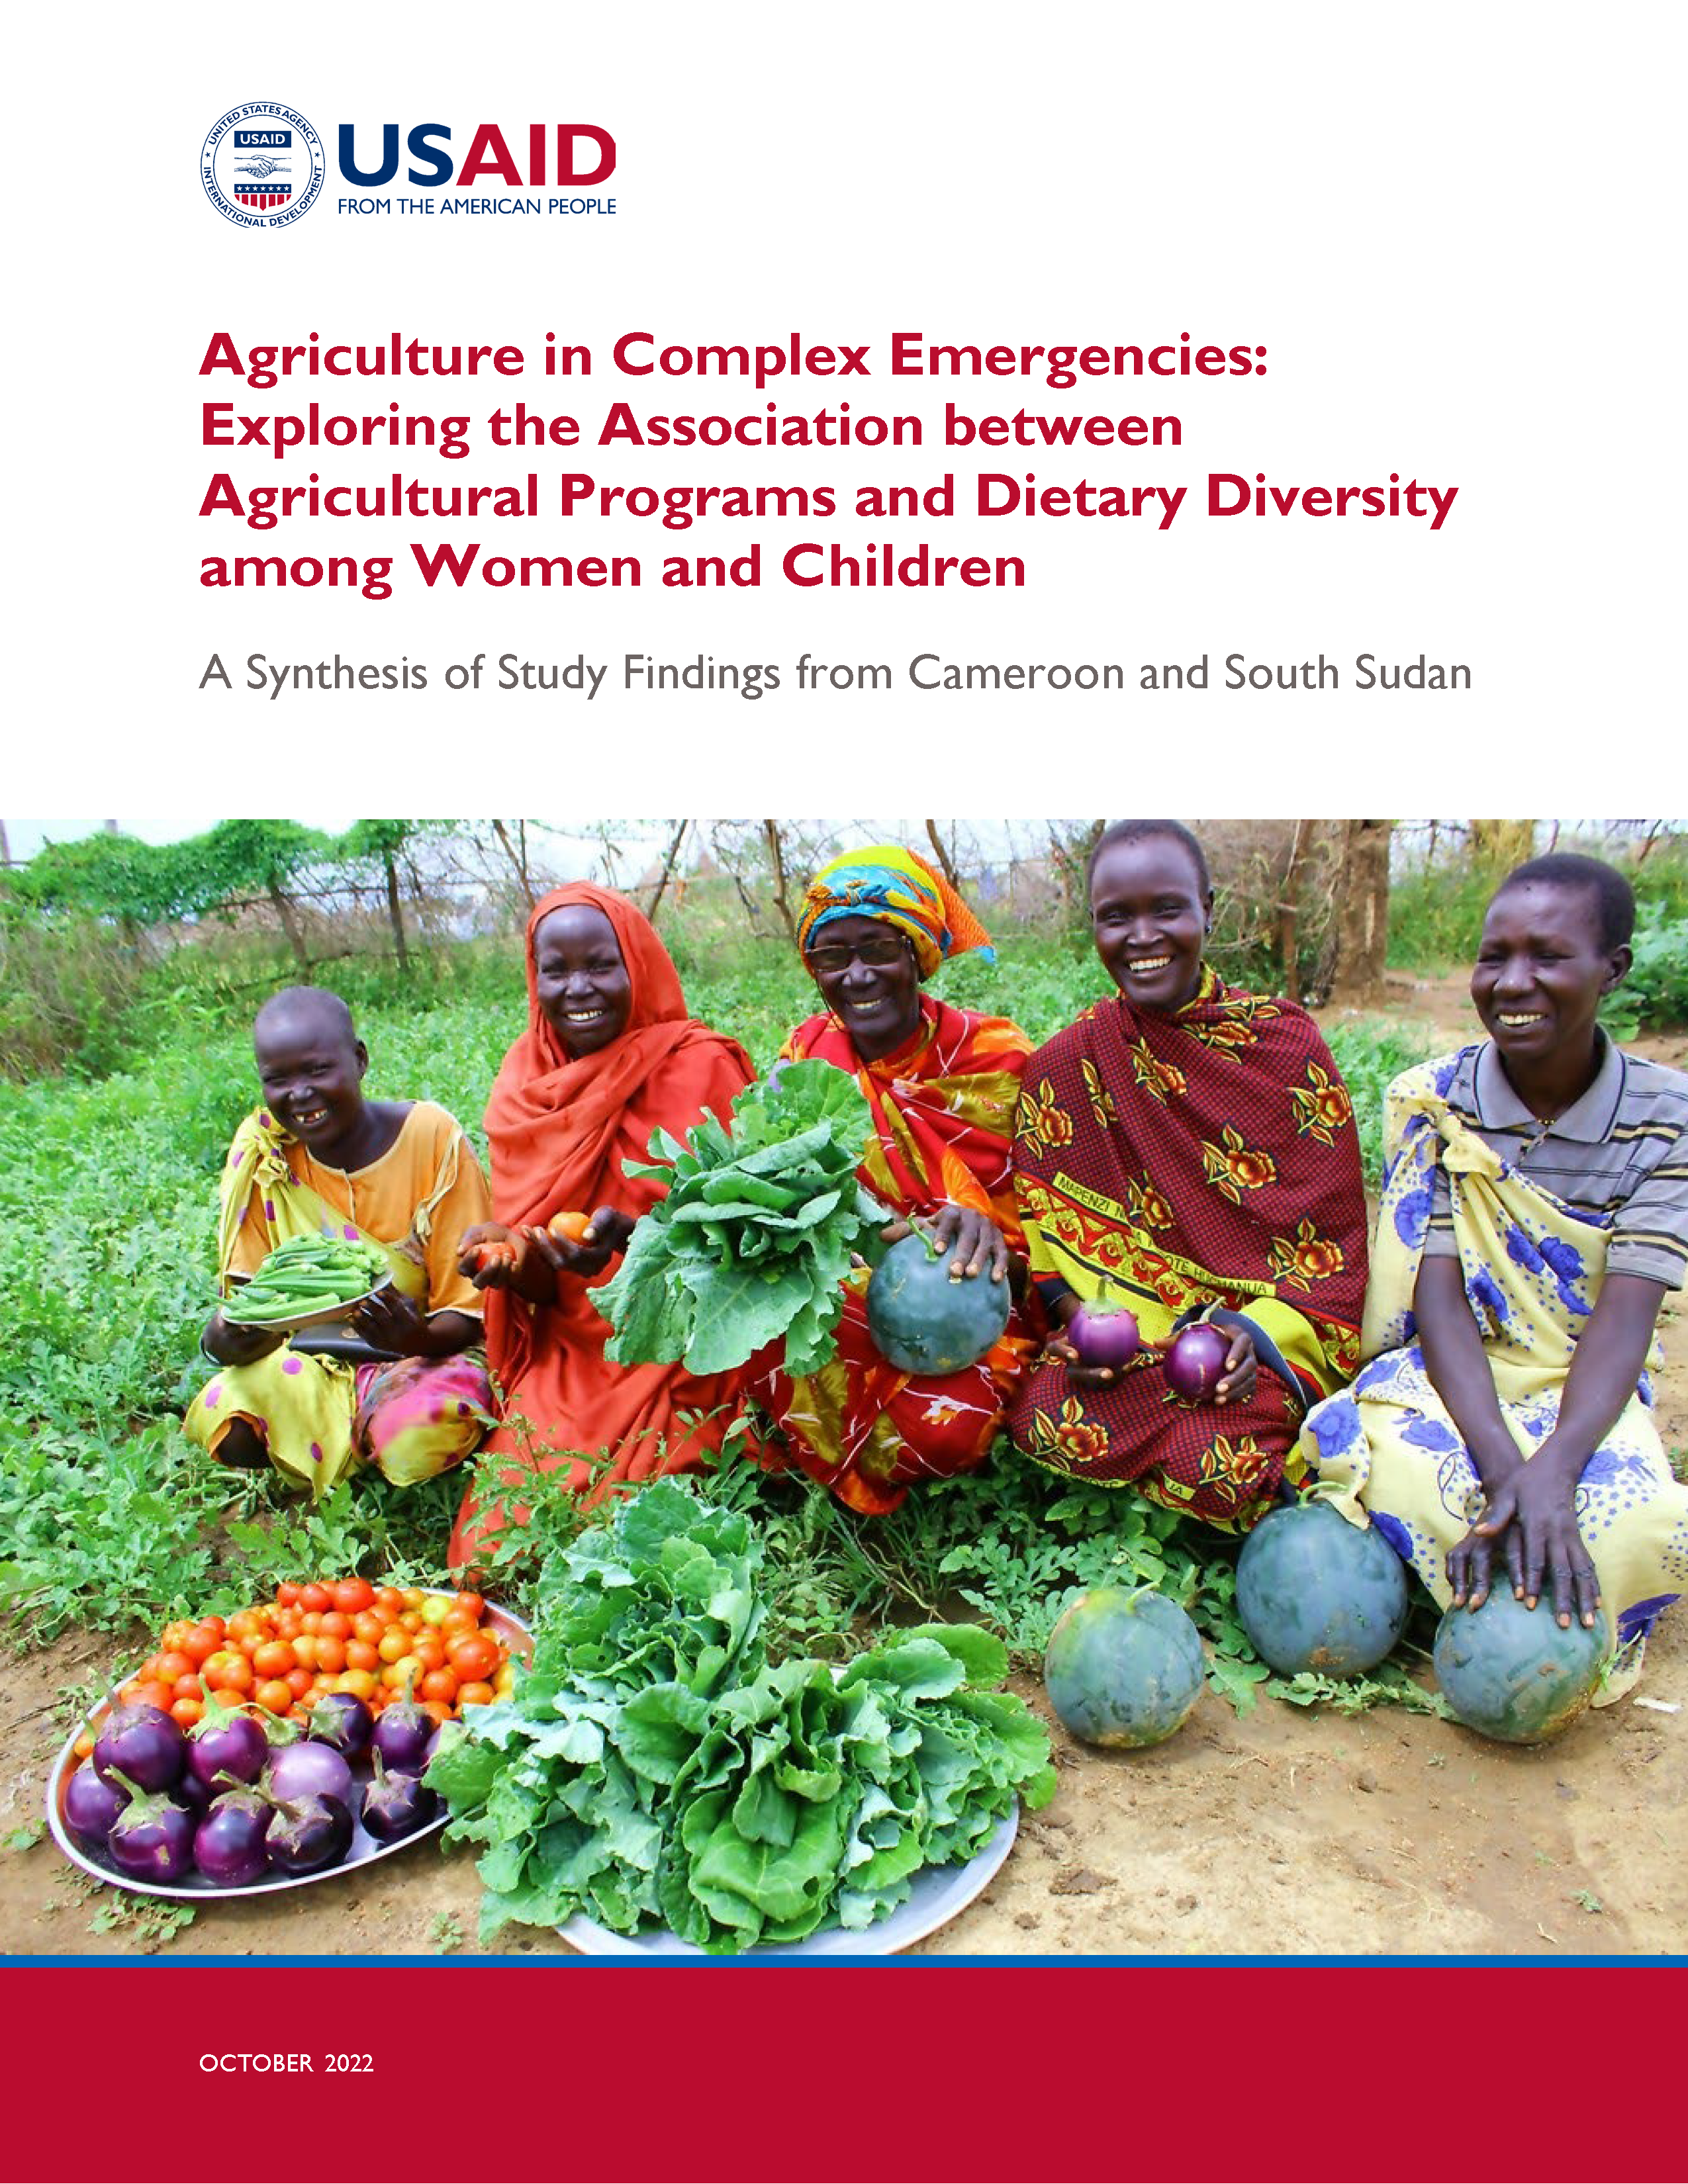 Page de couverture de L'agriculture dans les situations d'urgence complexes : Explorer l'association entre les programmes agricoles et la diversité alimentaire chez les femmes et les enfants : une synthèse des résultats d'une étude menée au Cameroun et au Soudan du Sud